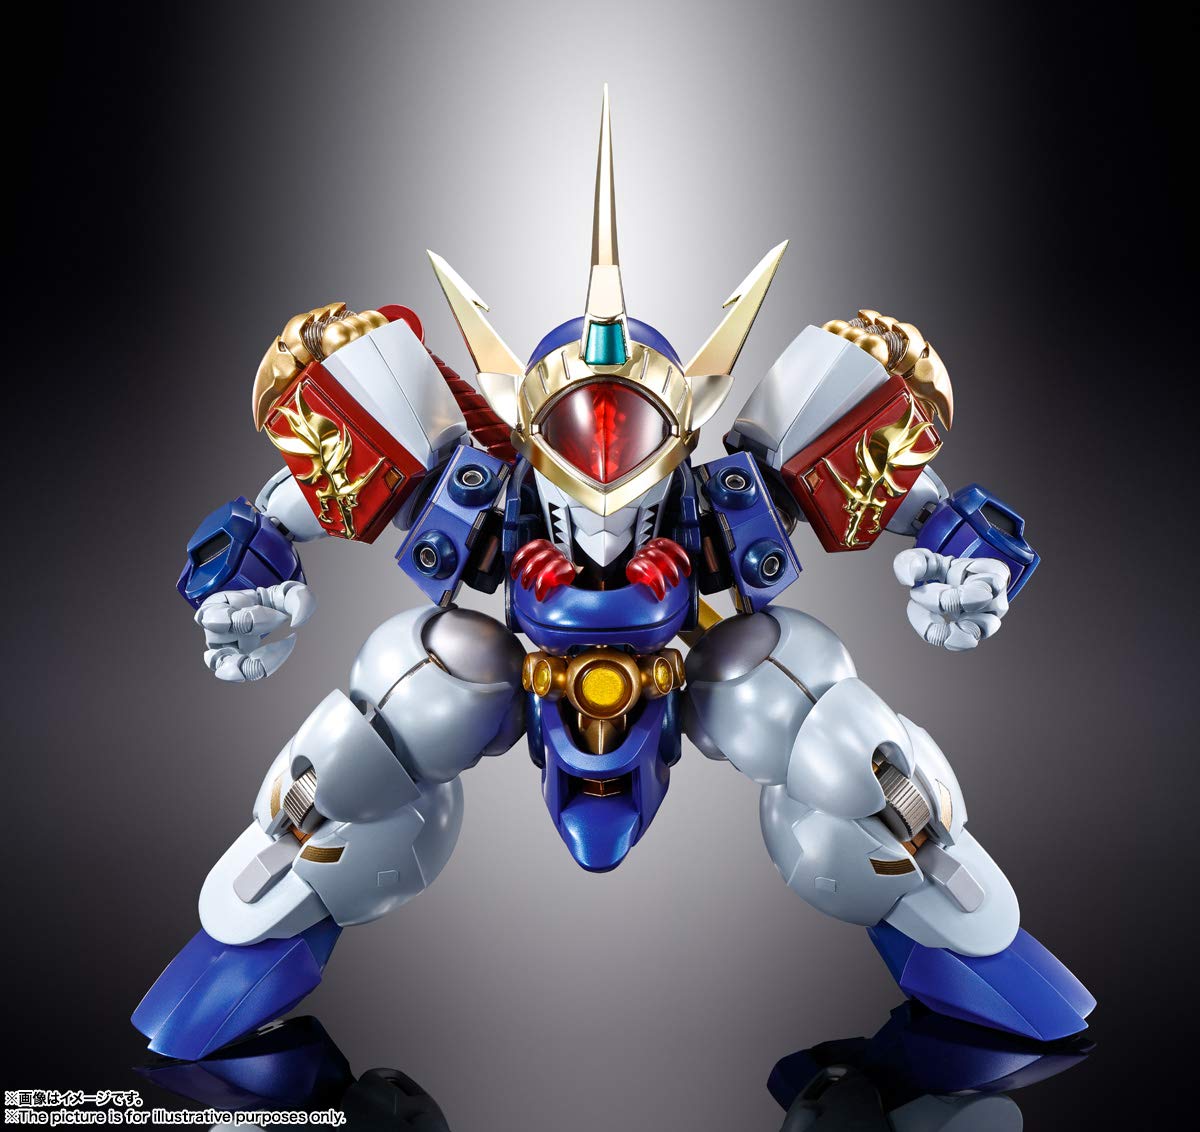 TAMASHII NATIONS Metal Build - Dragon Scale Ry Ujinmaru [Mashine Hero Wataru], Bandai Spirits Metal Build Figure (BAS61475)